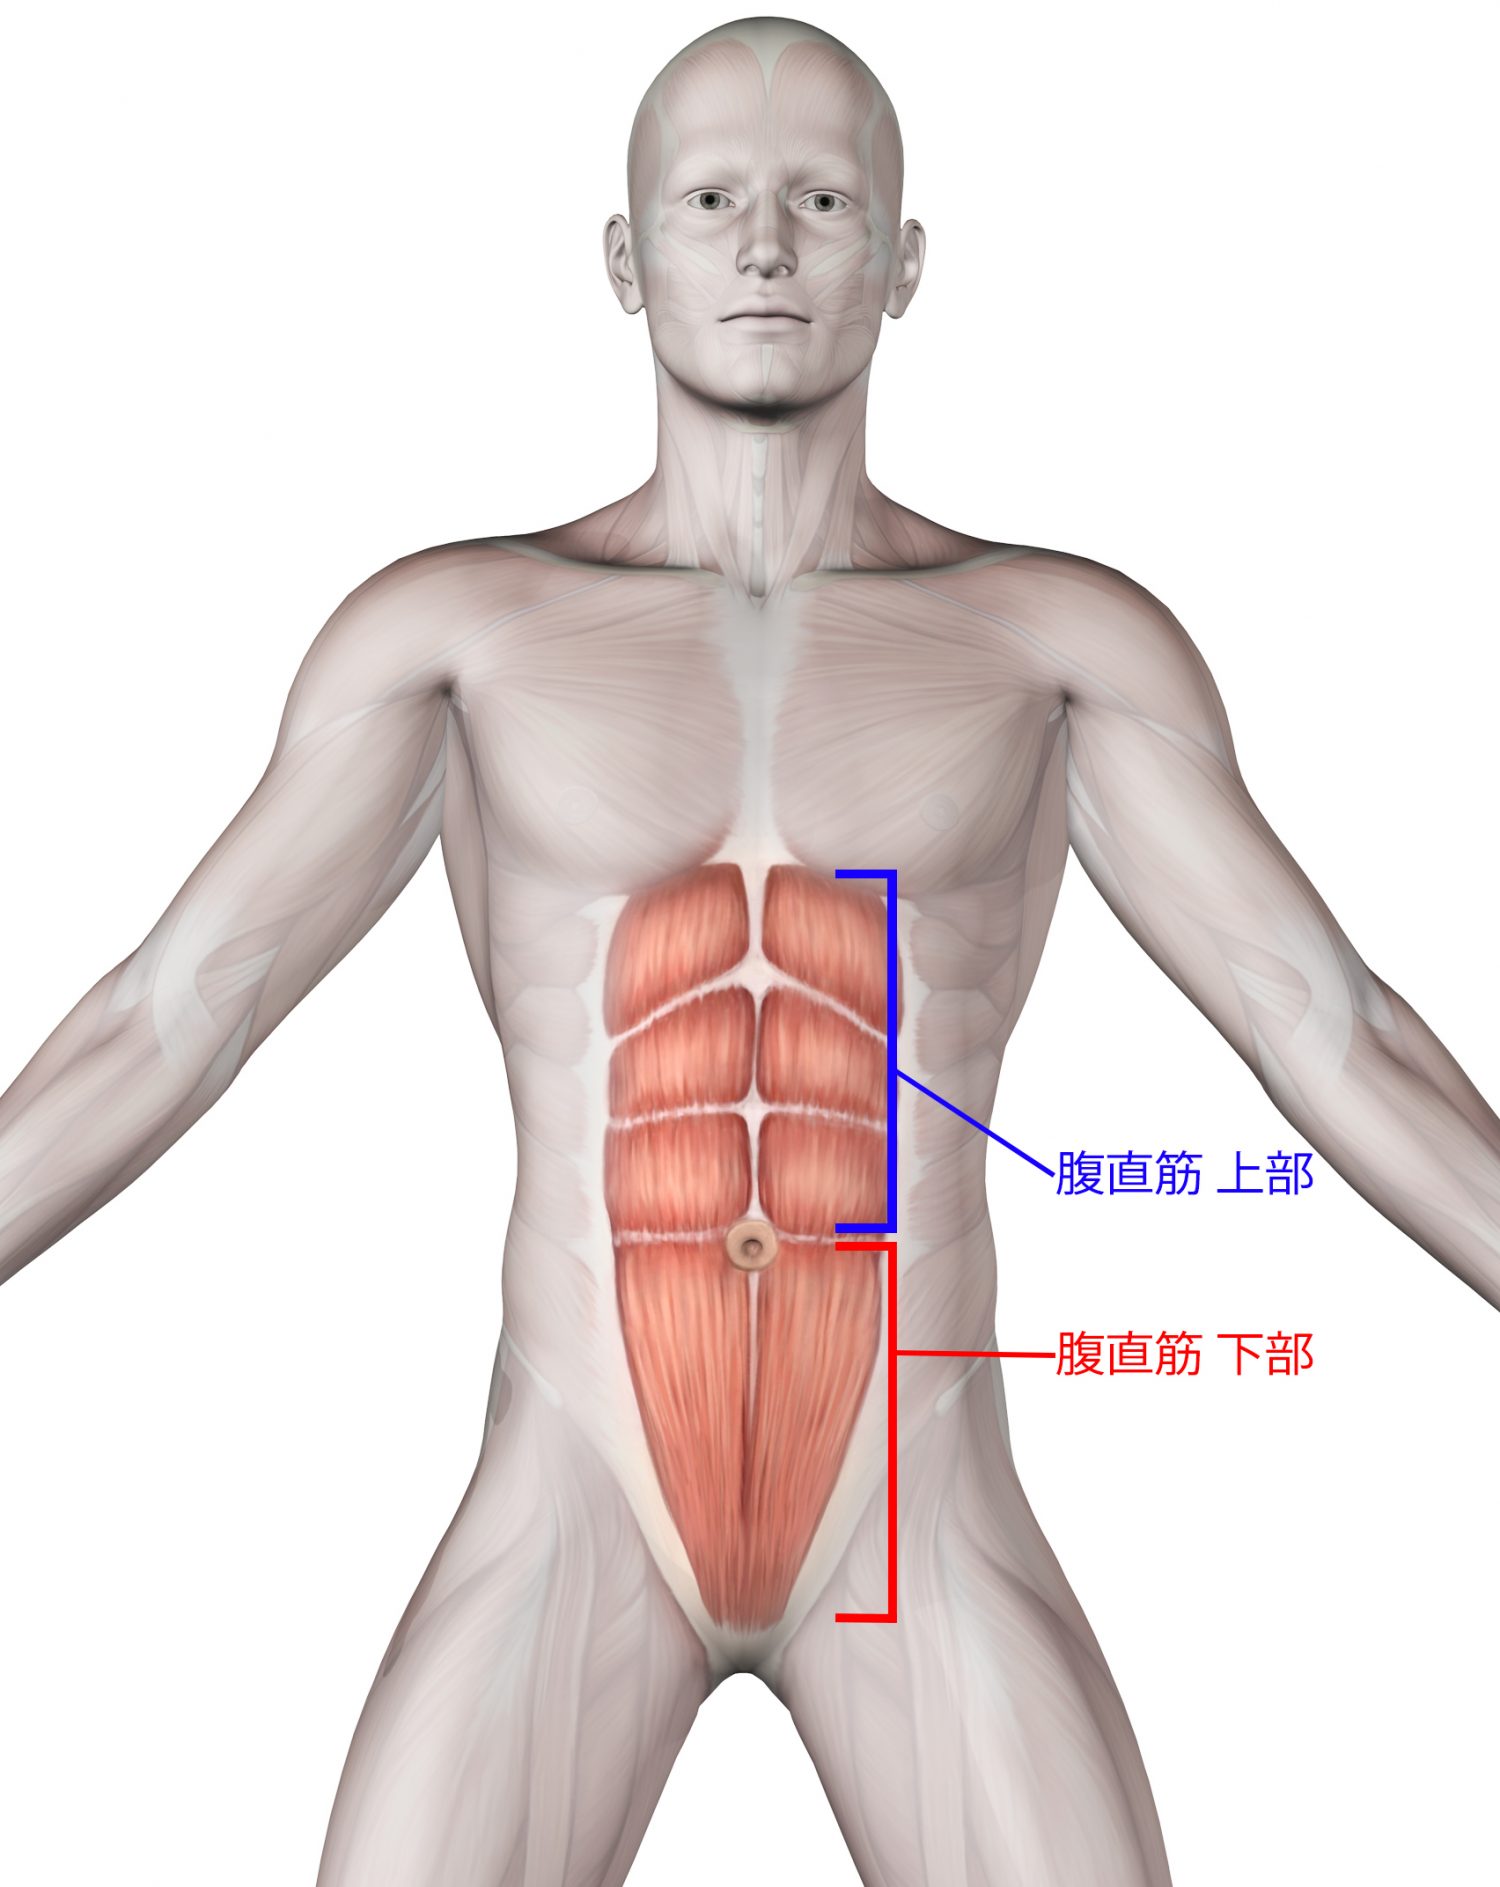 レッグレイズで下腹部を集中的に鍛える 正しいやり方 ポイントを解説 メンズファッションメディア Otokomaeotokomae 男前研究所